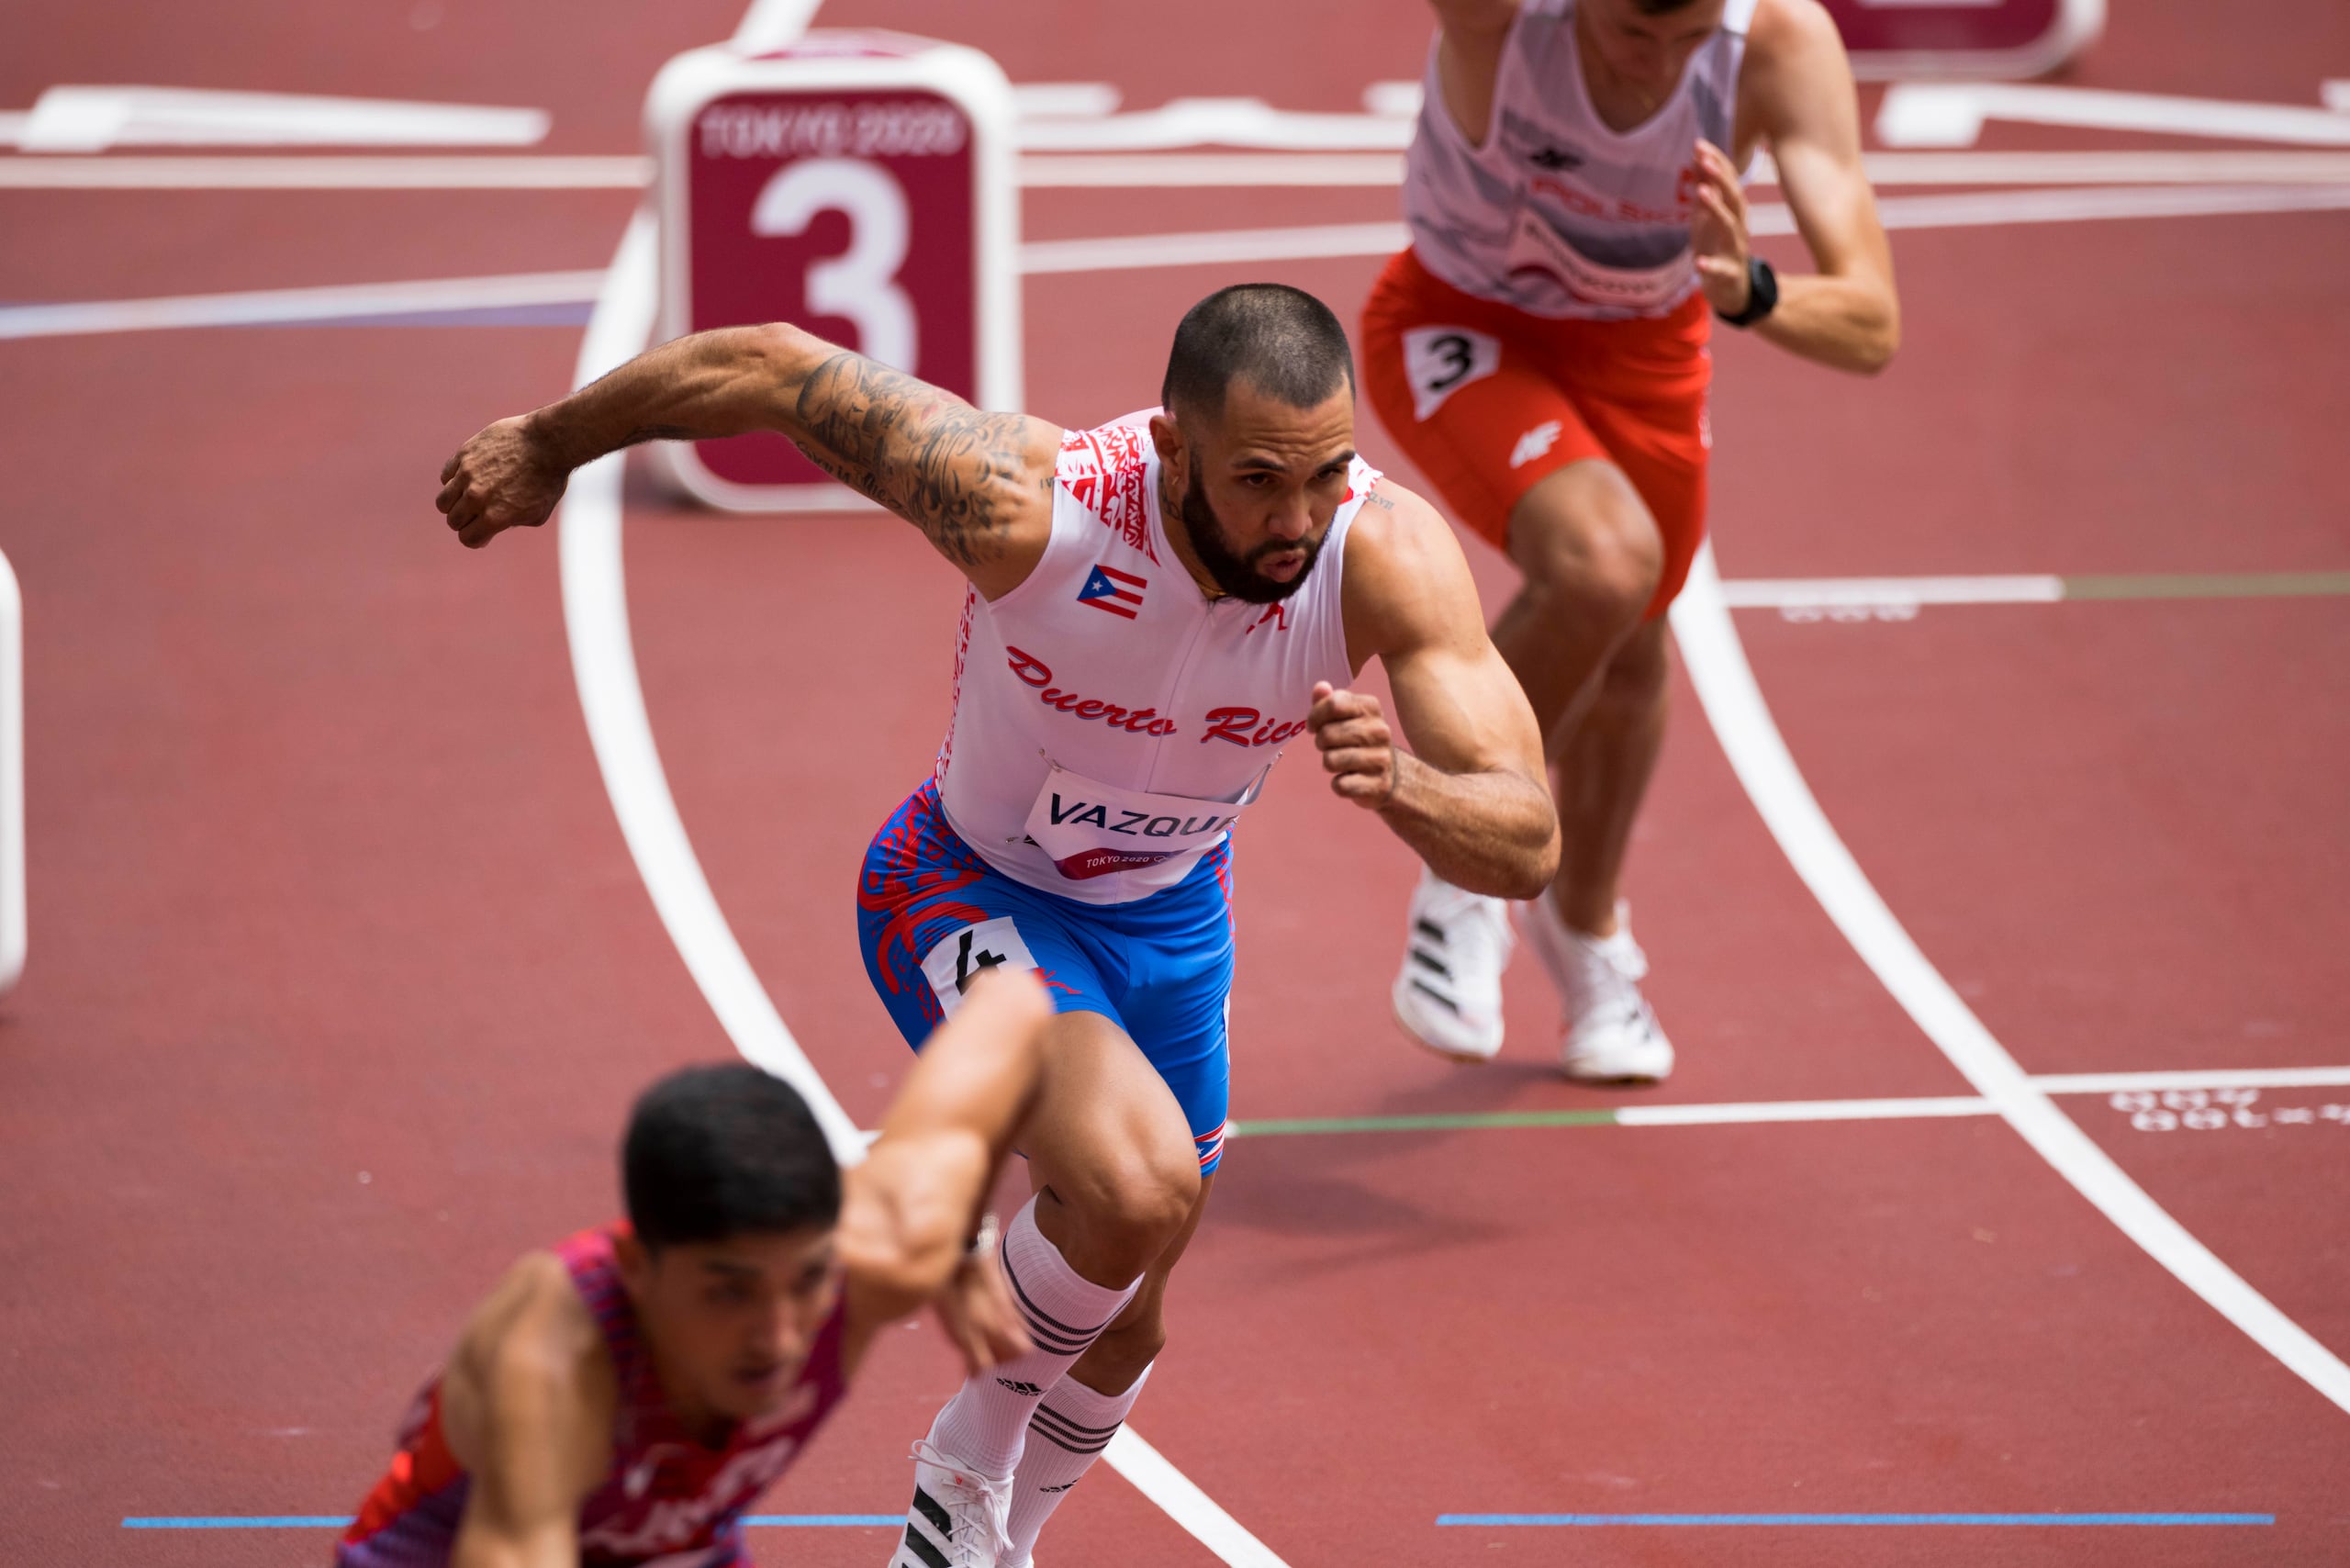 El boricua Wesley Vázquez arribó tarde a su cita en las preliminares de los 800 metros debido a que tuvo un falso positivo en una prueba de COVID justo antes de la competencia.